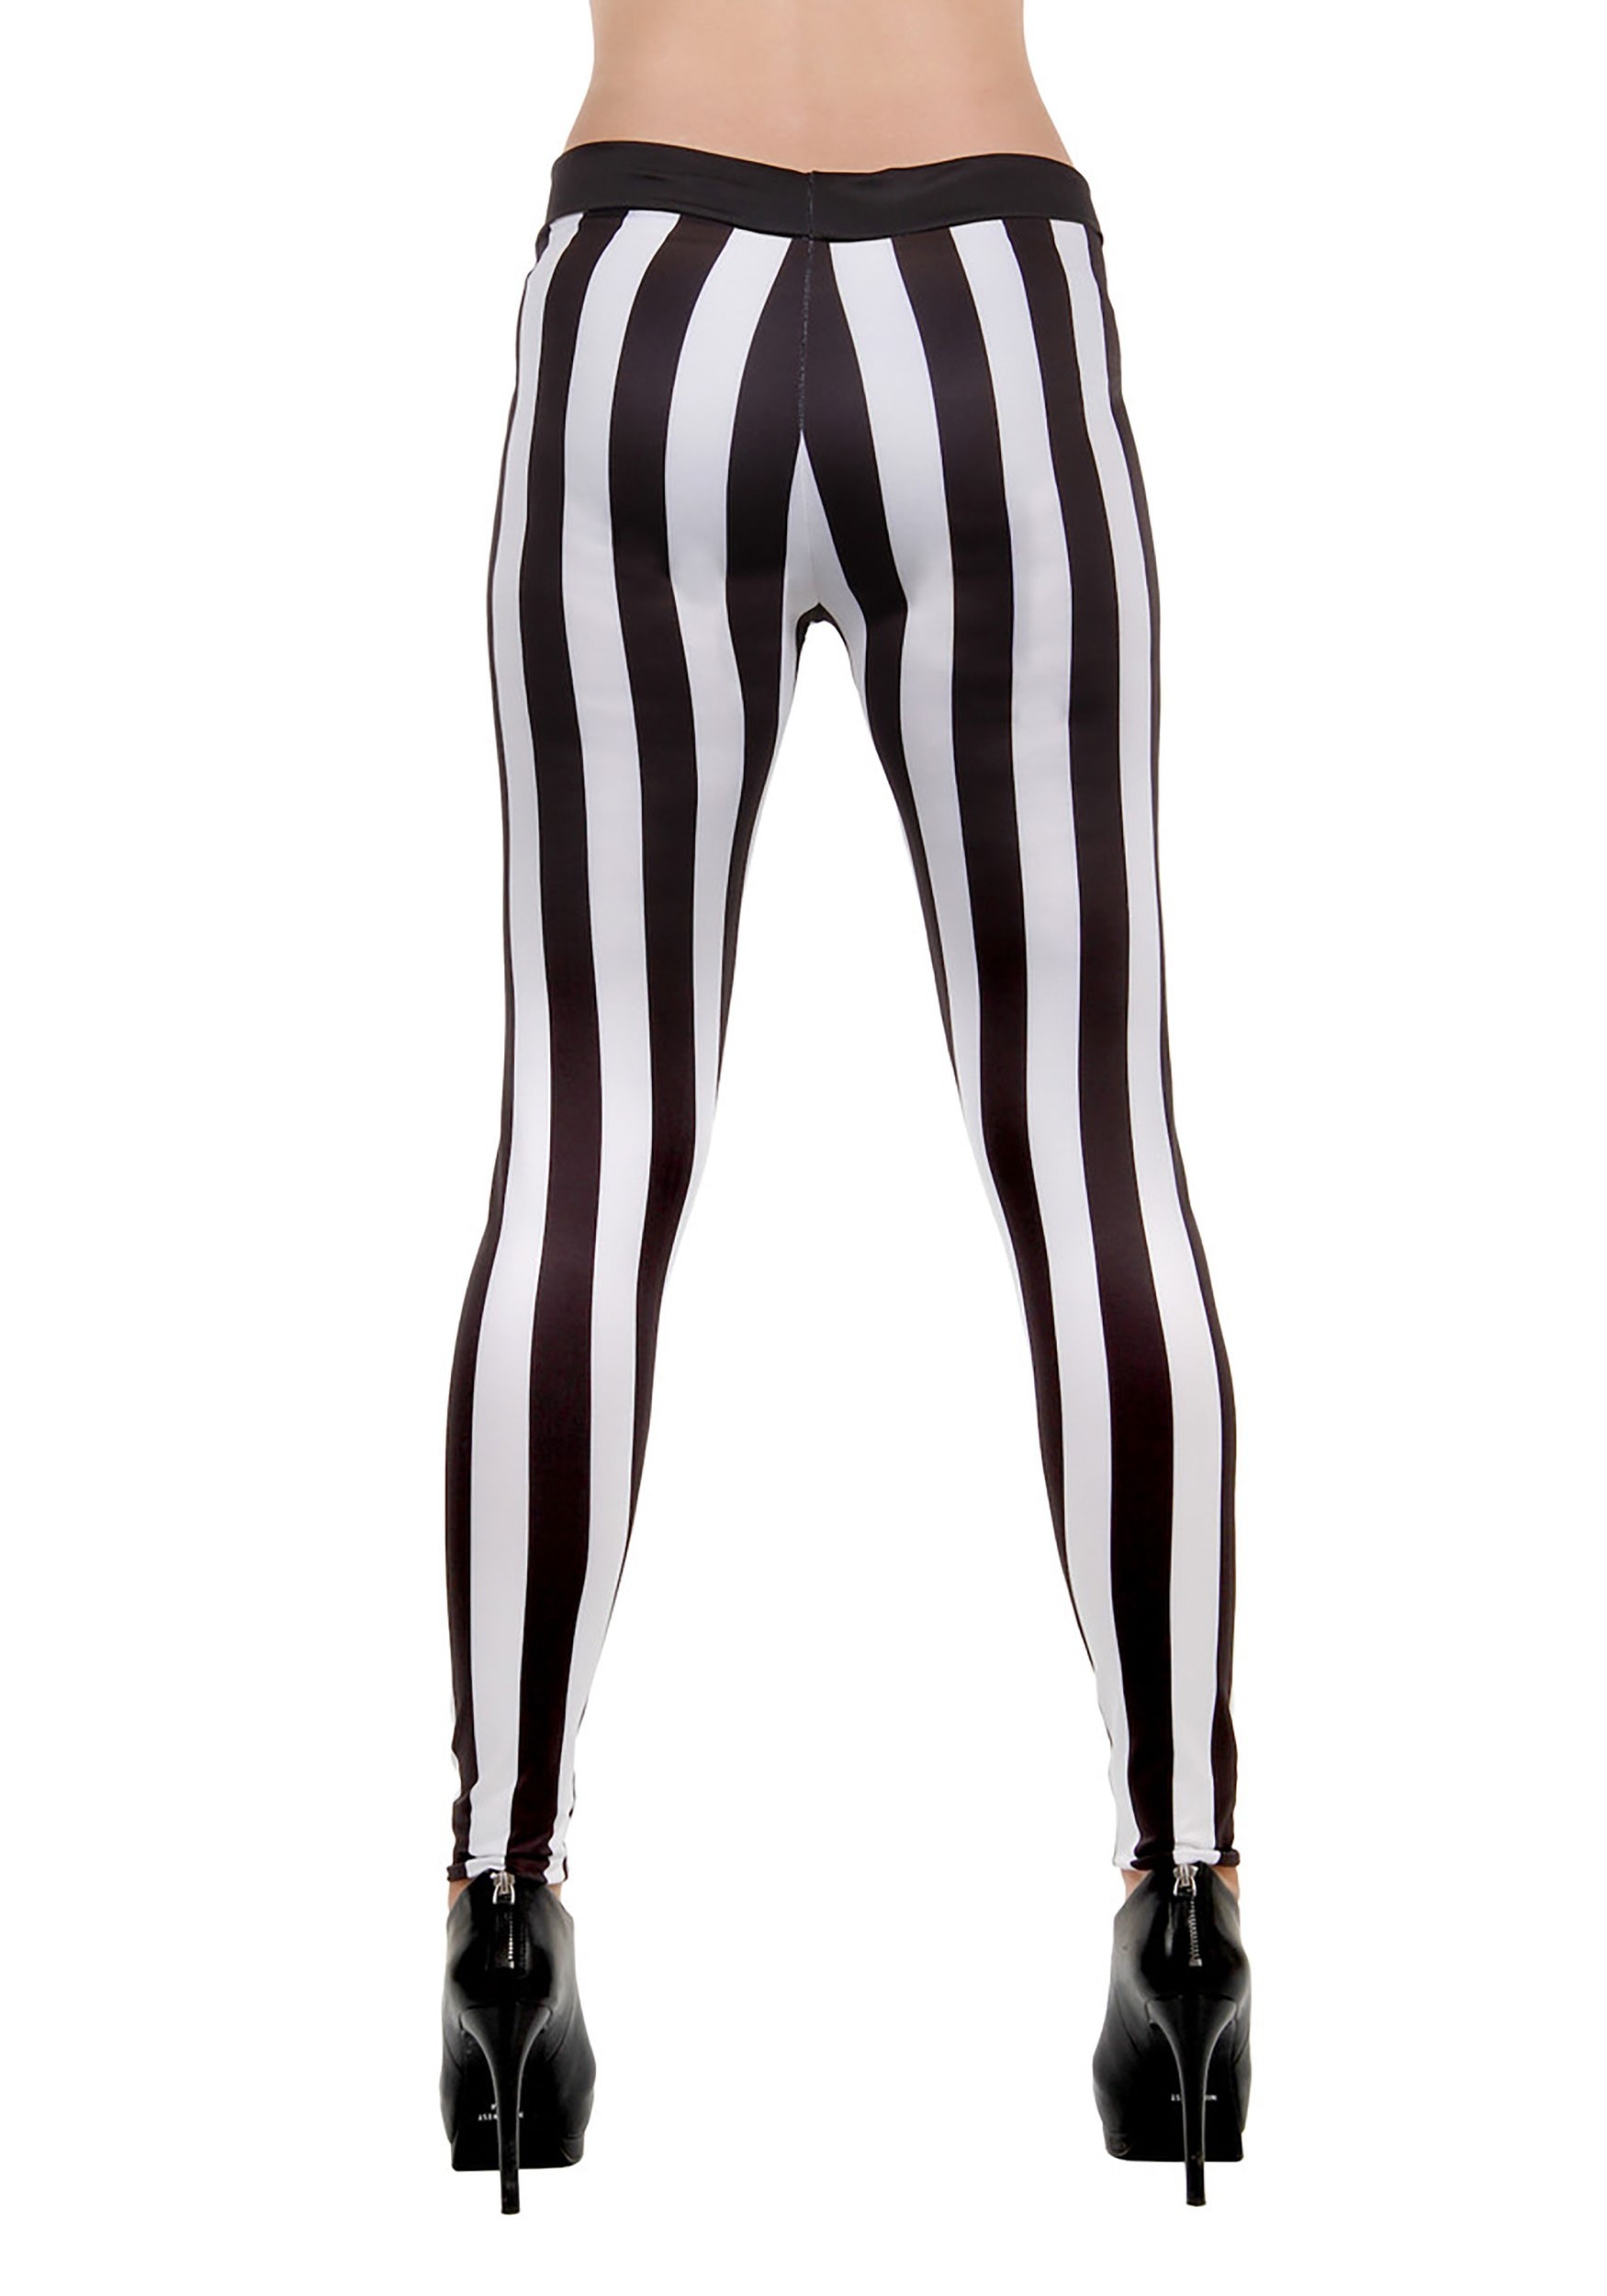 Black and White Striped Leggings for Women